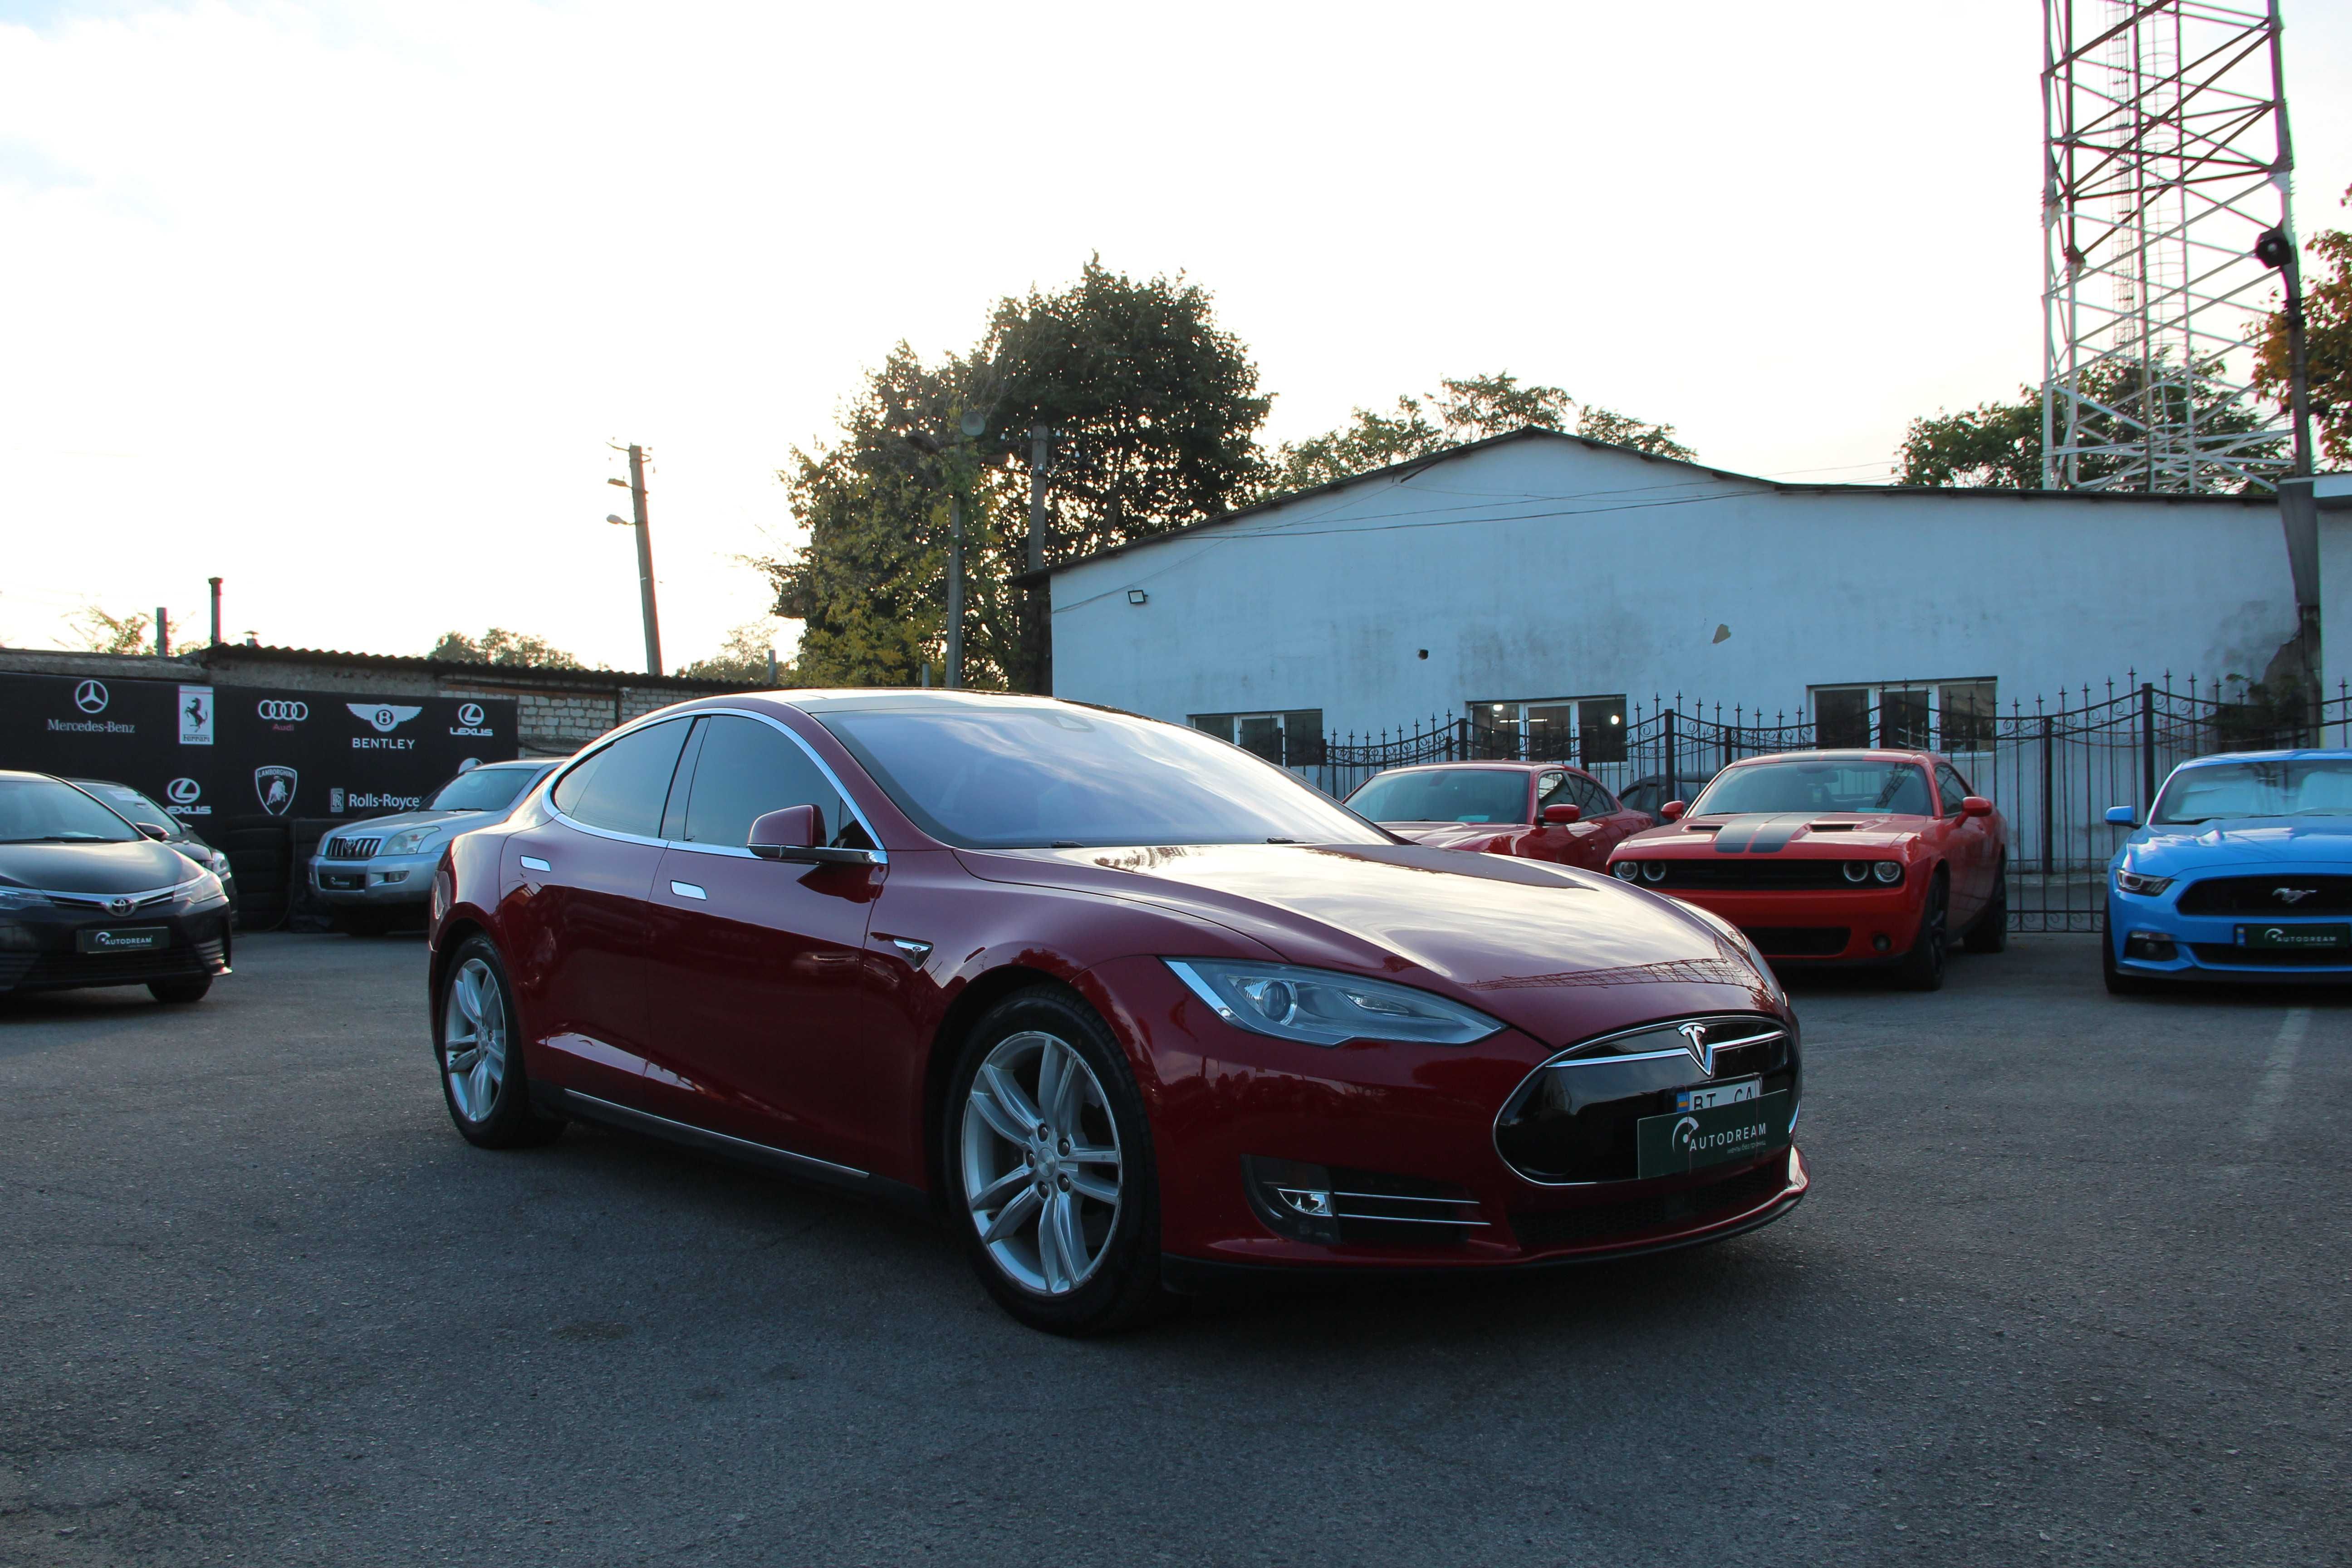 Tesla Model S 85 D, полный привод, 85 кВт, 2015 год, Тесла Модел С 85